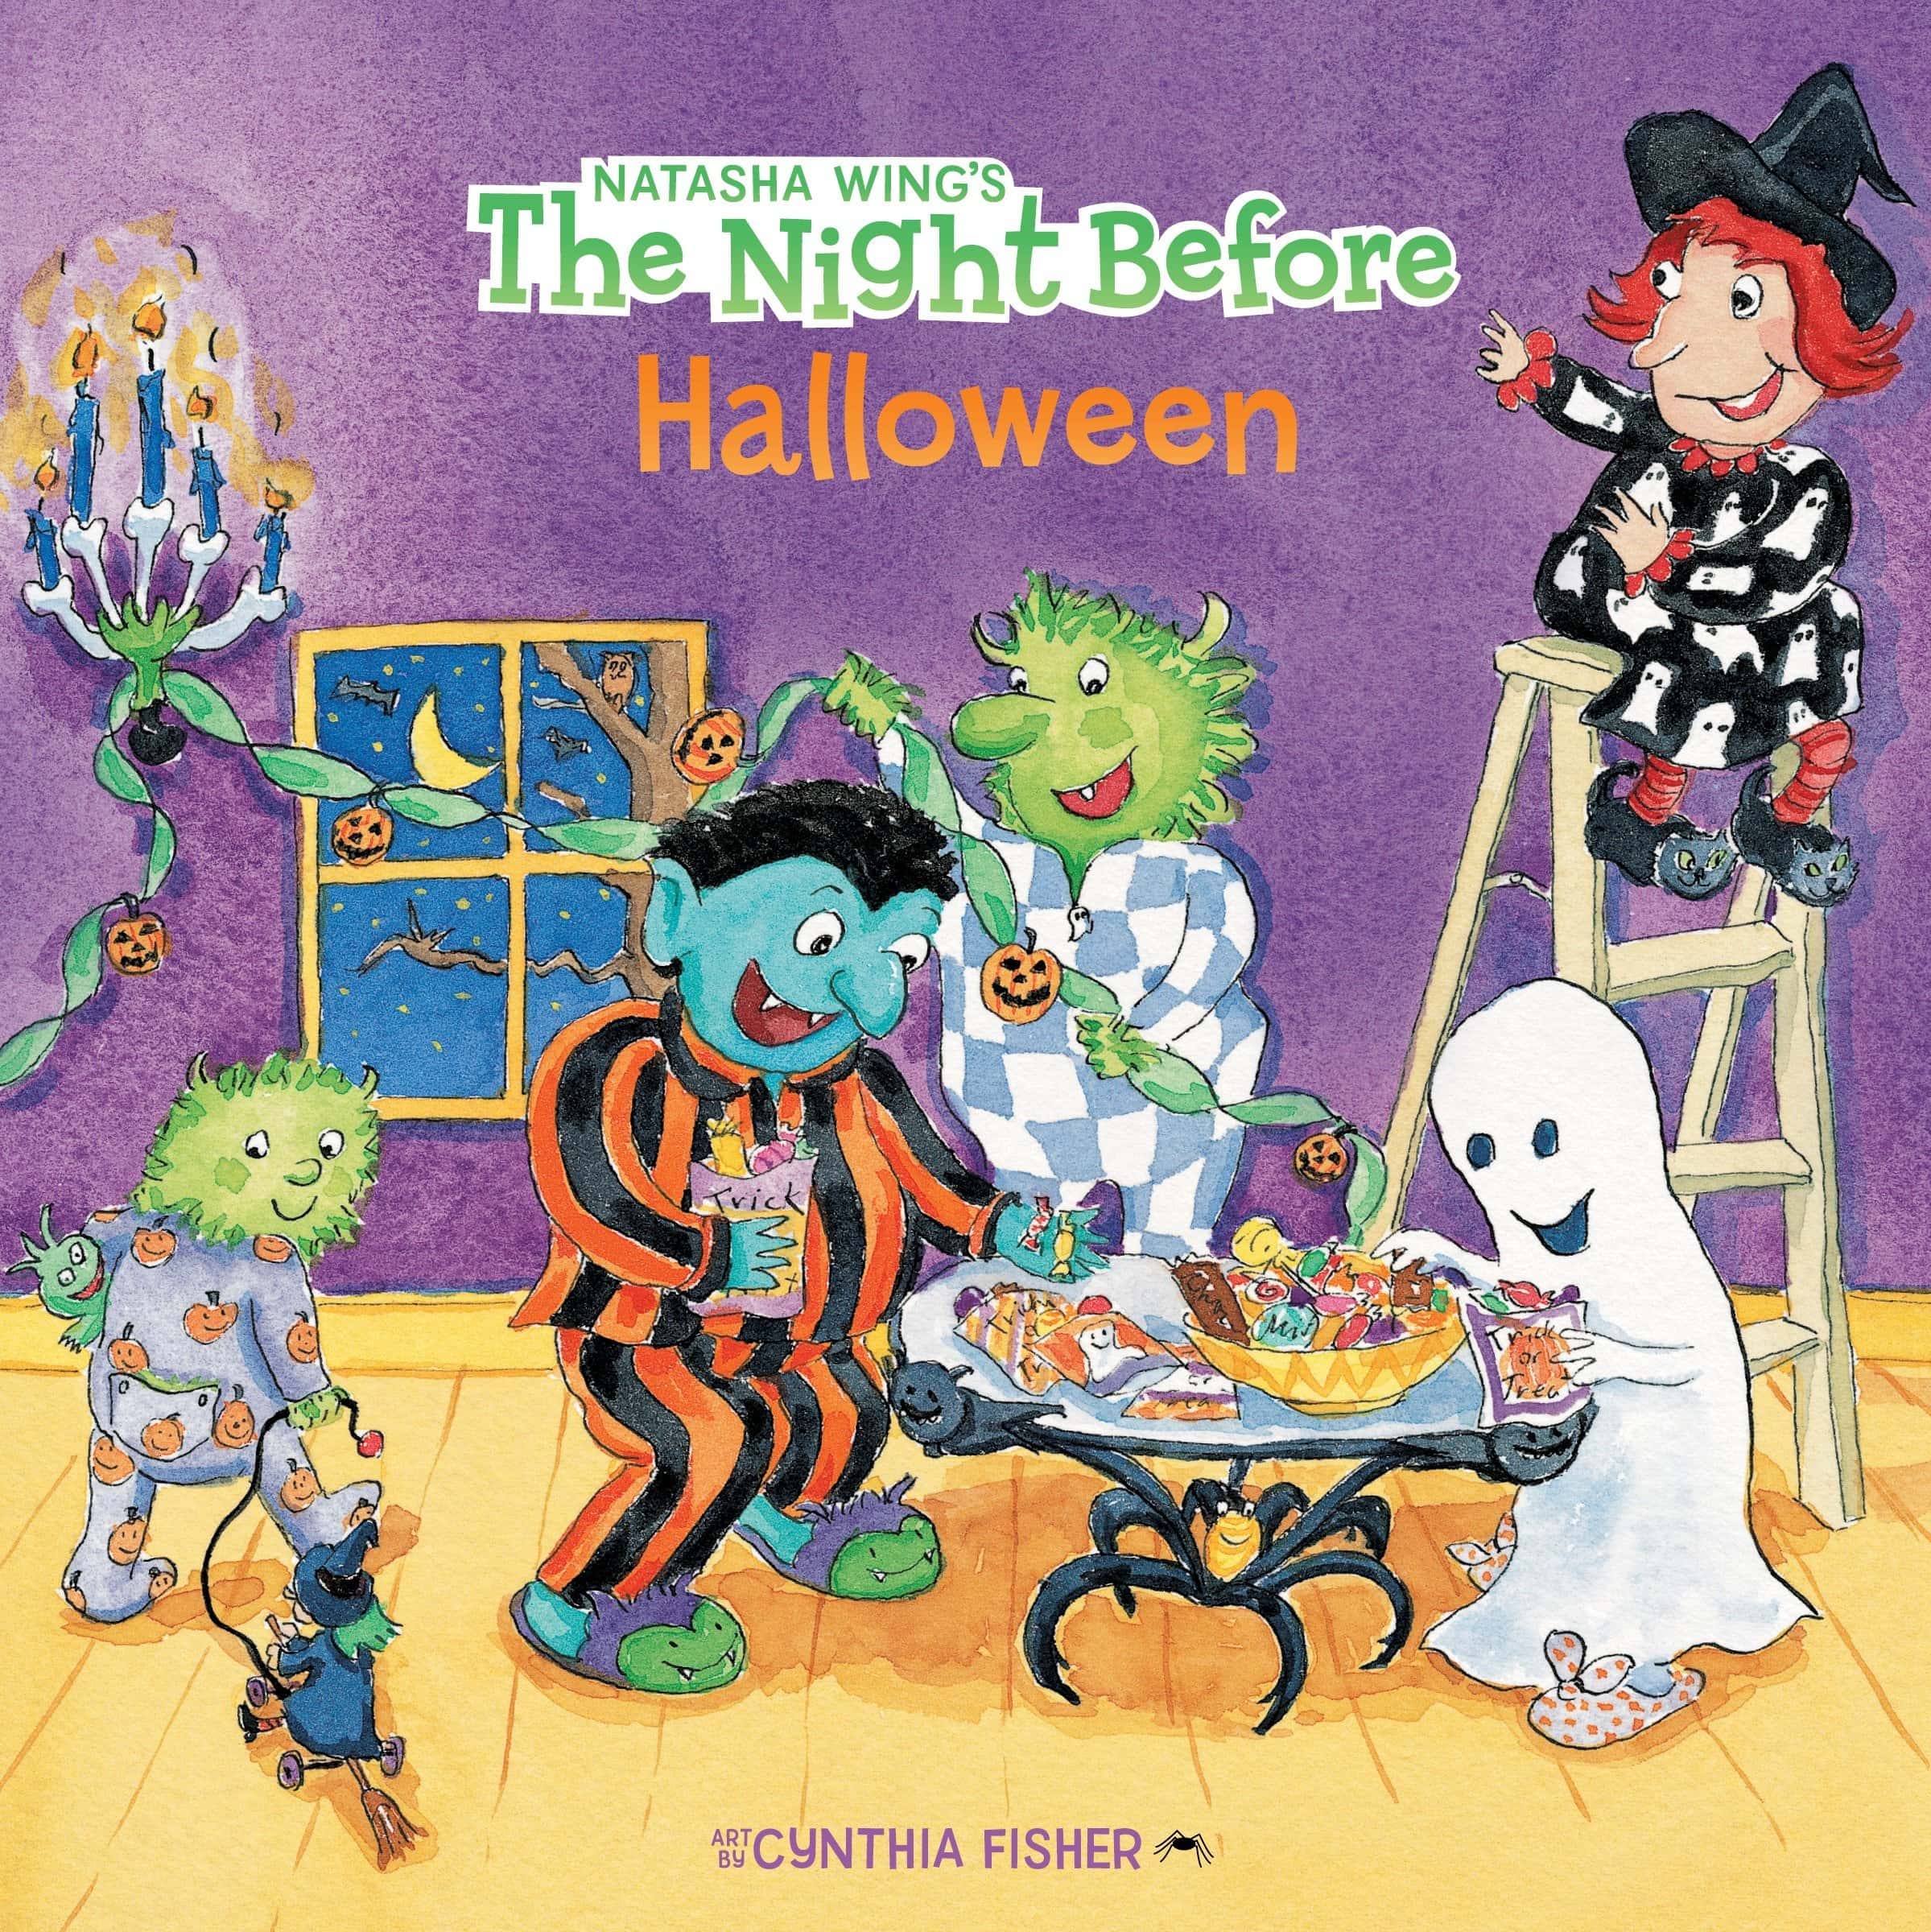 "The Night Before Halloween" by Natasha Wing